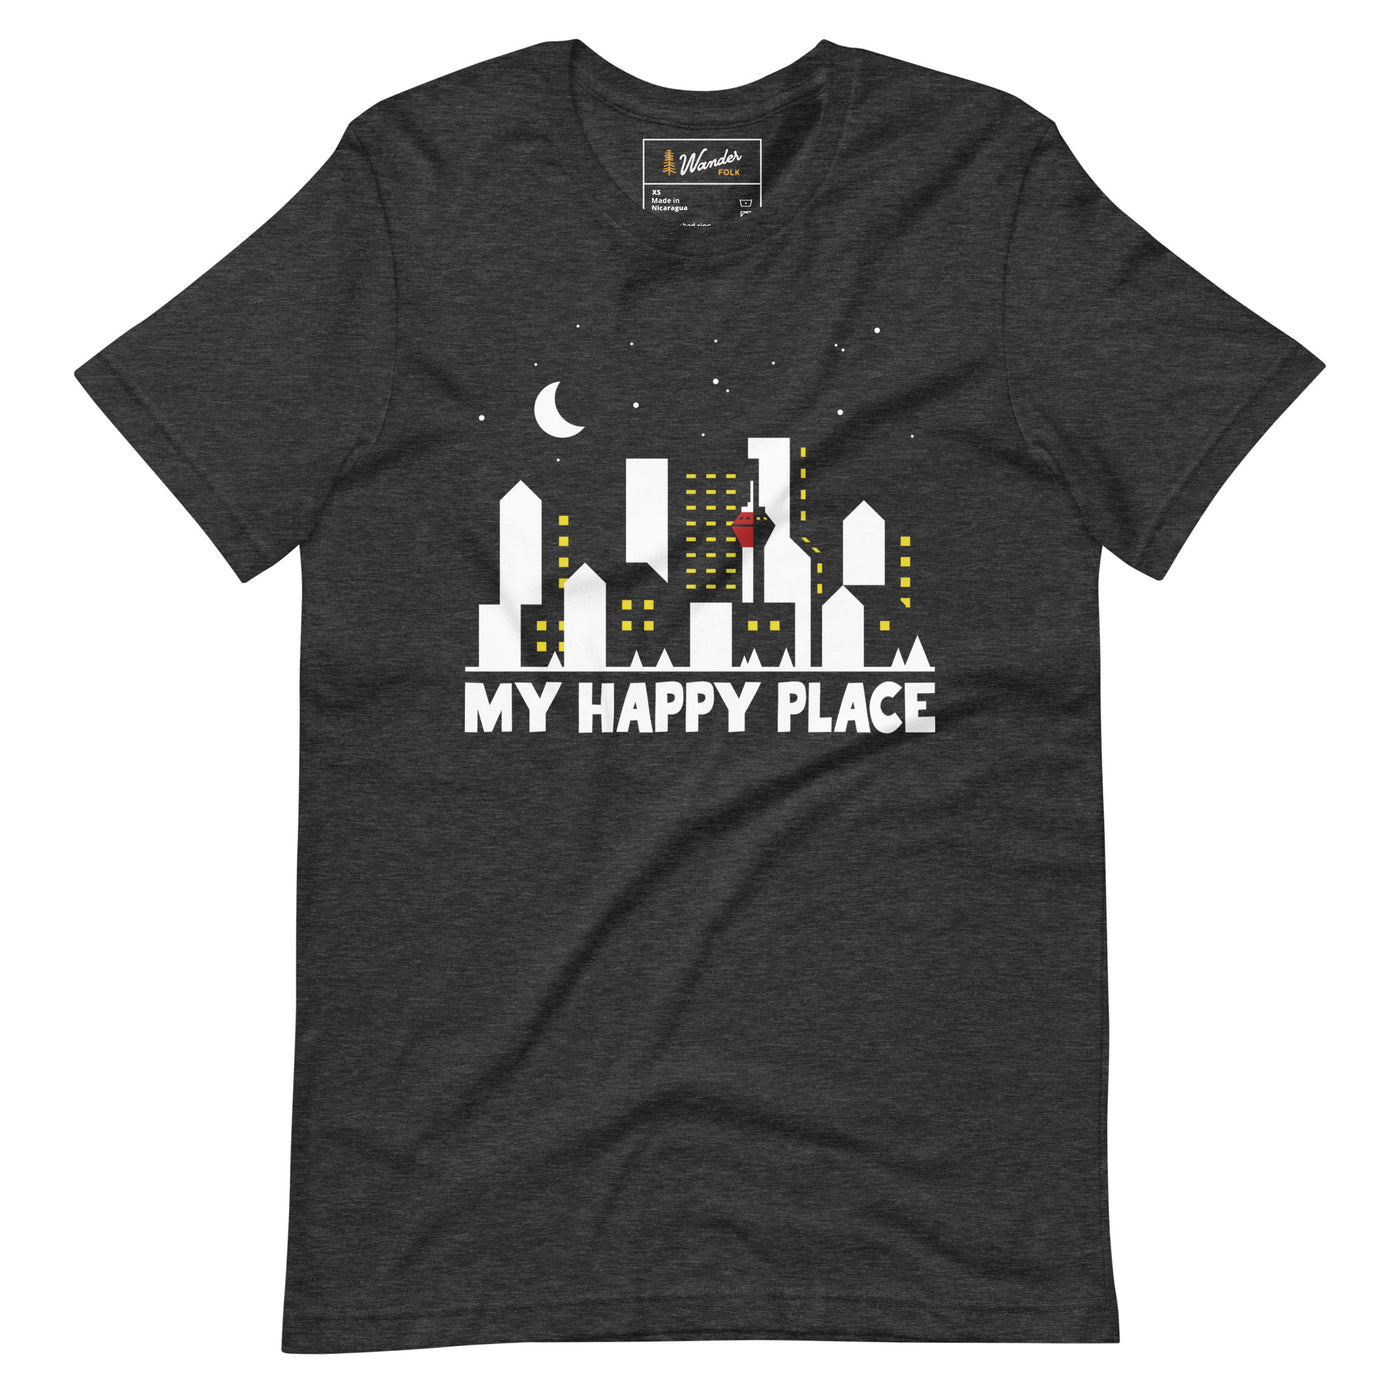 My Happy Place - Unisex